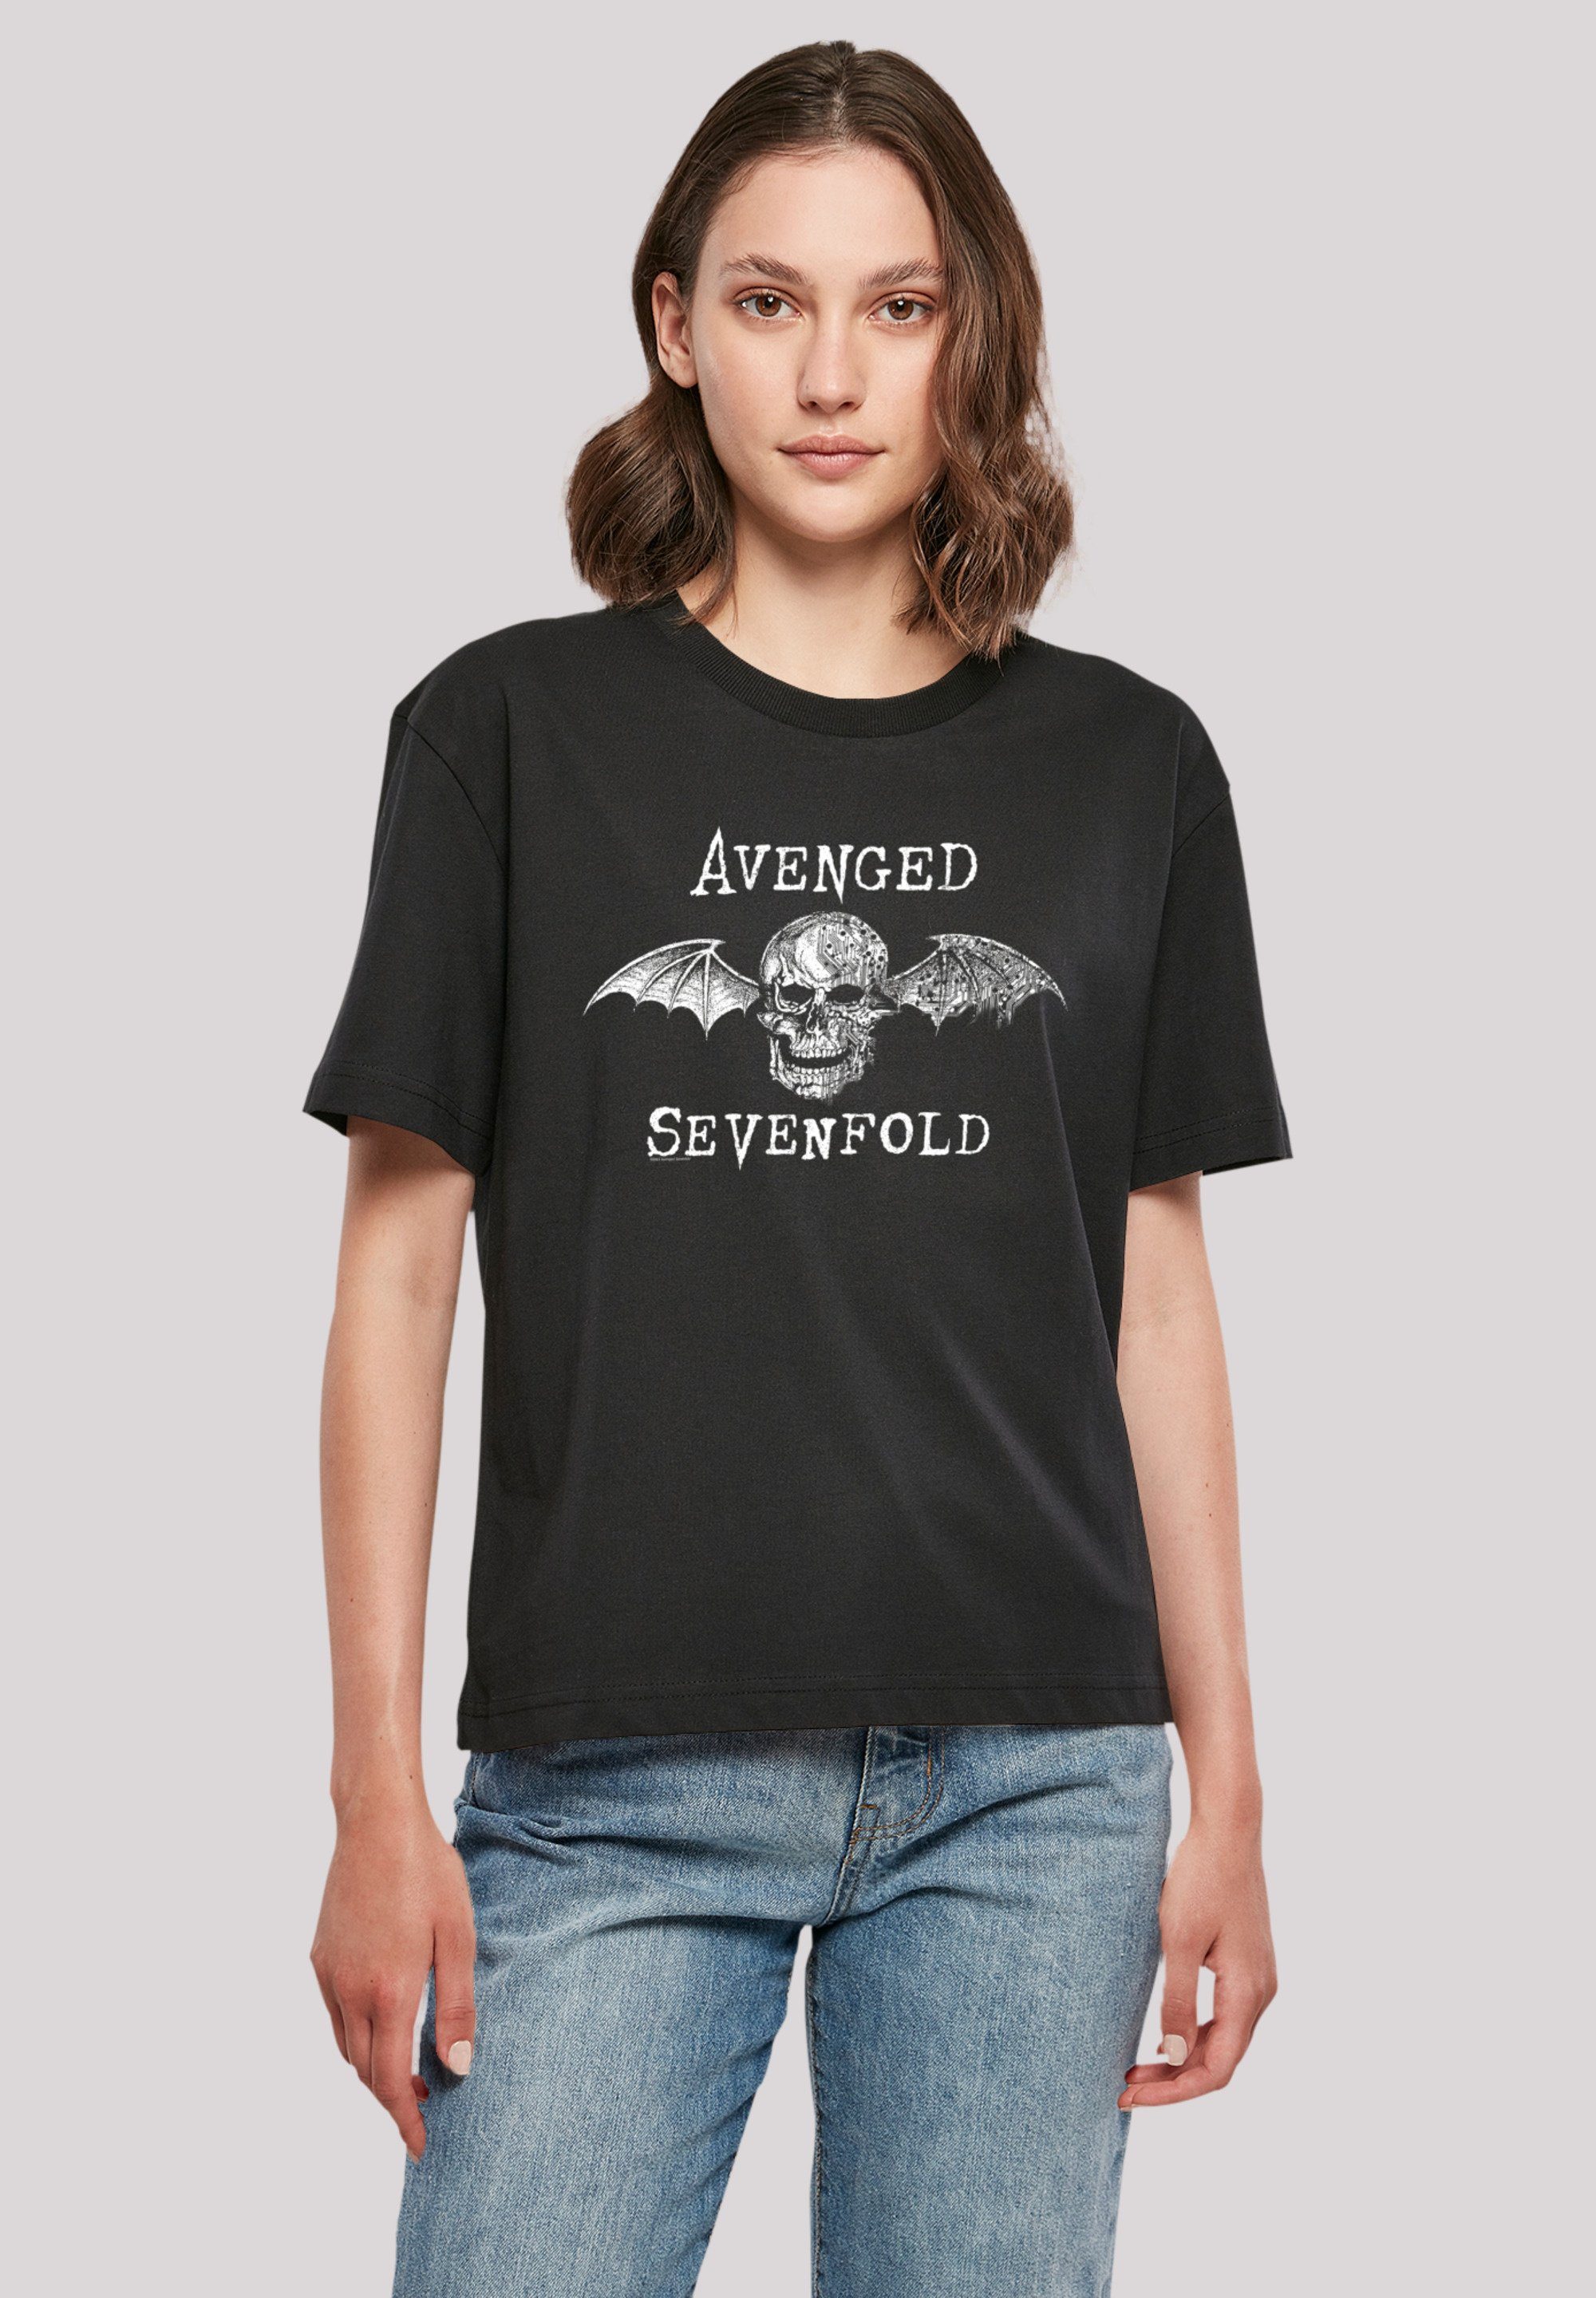 Cyborg Bat Sevenfold Band Sevenfold Qualität, Premium Avenged Rock Band, F4NT4STIC Avenged lizenziertes T-Shirt Offiziell T-Shirt Metal Rock-Musik,